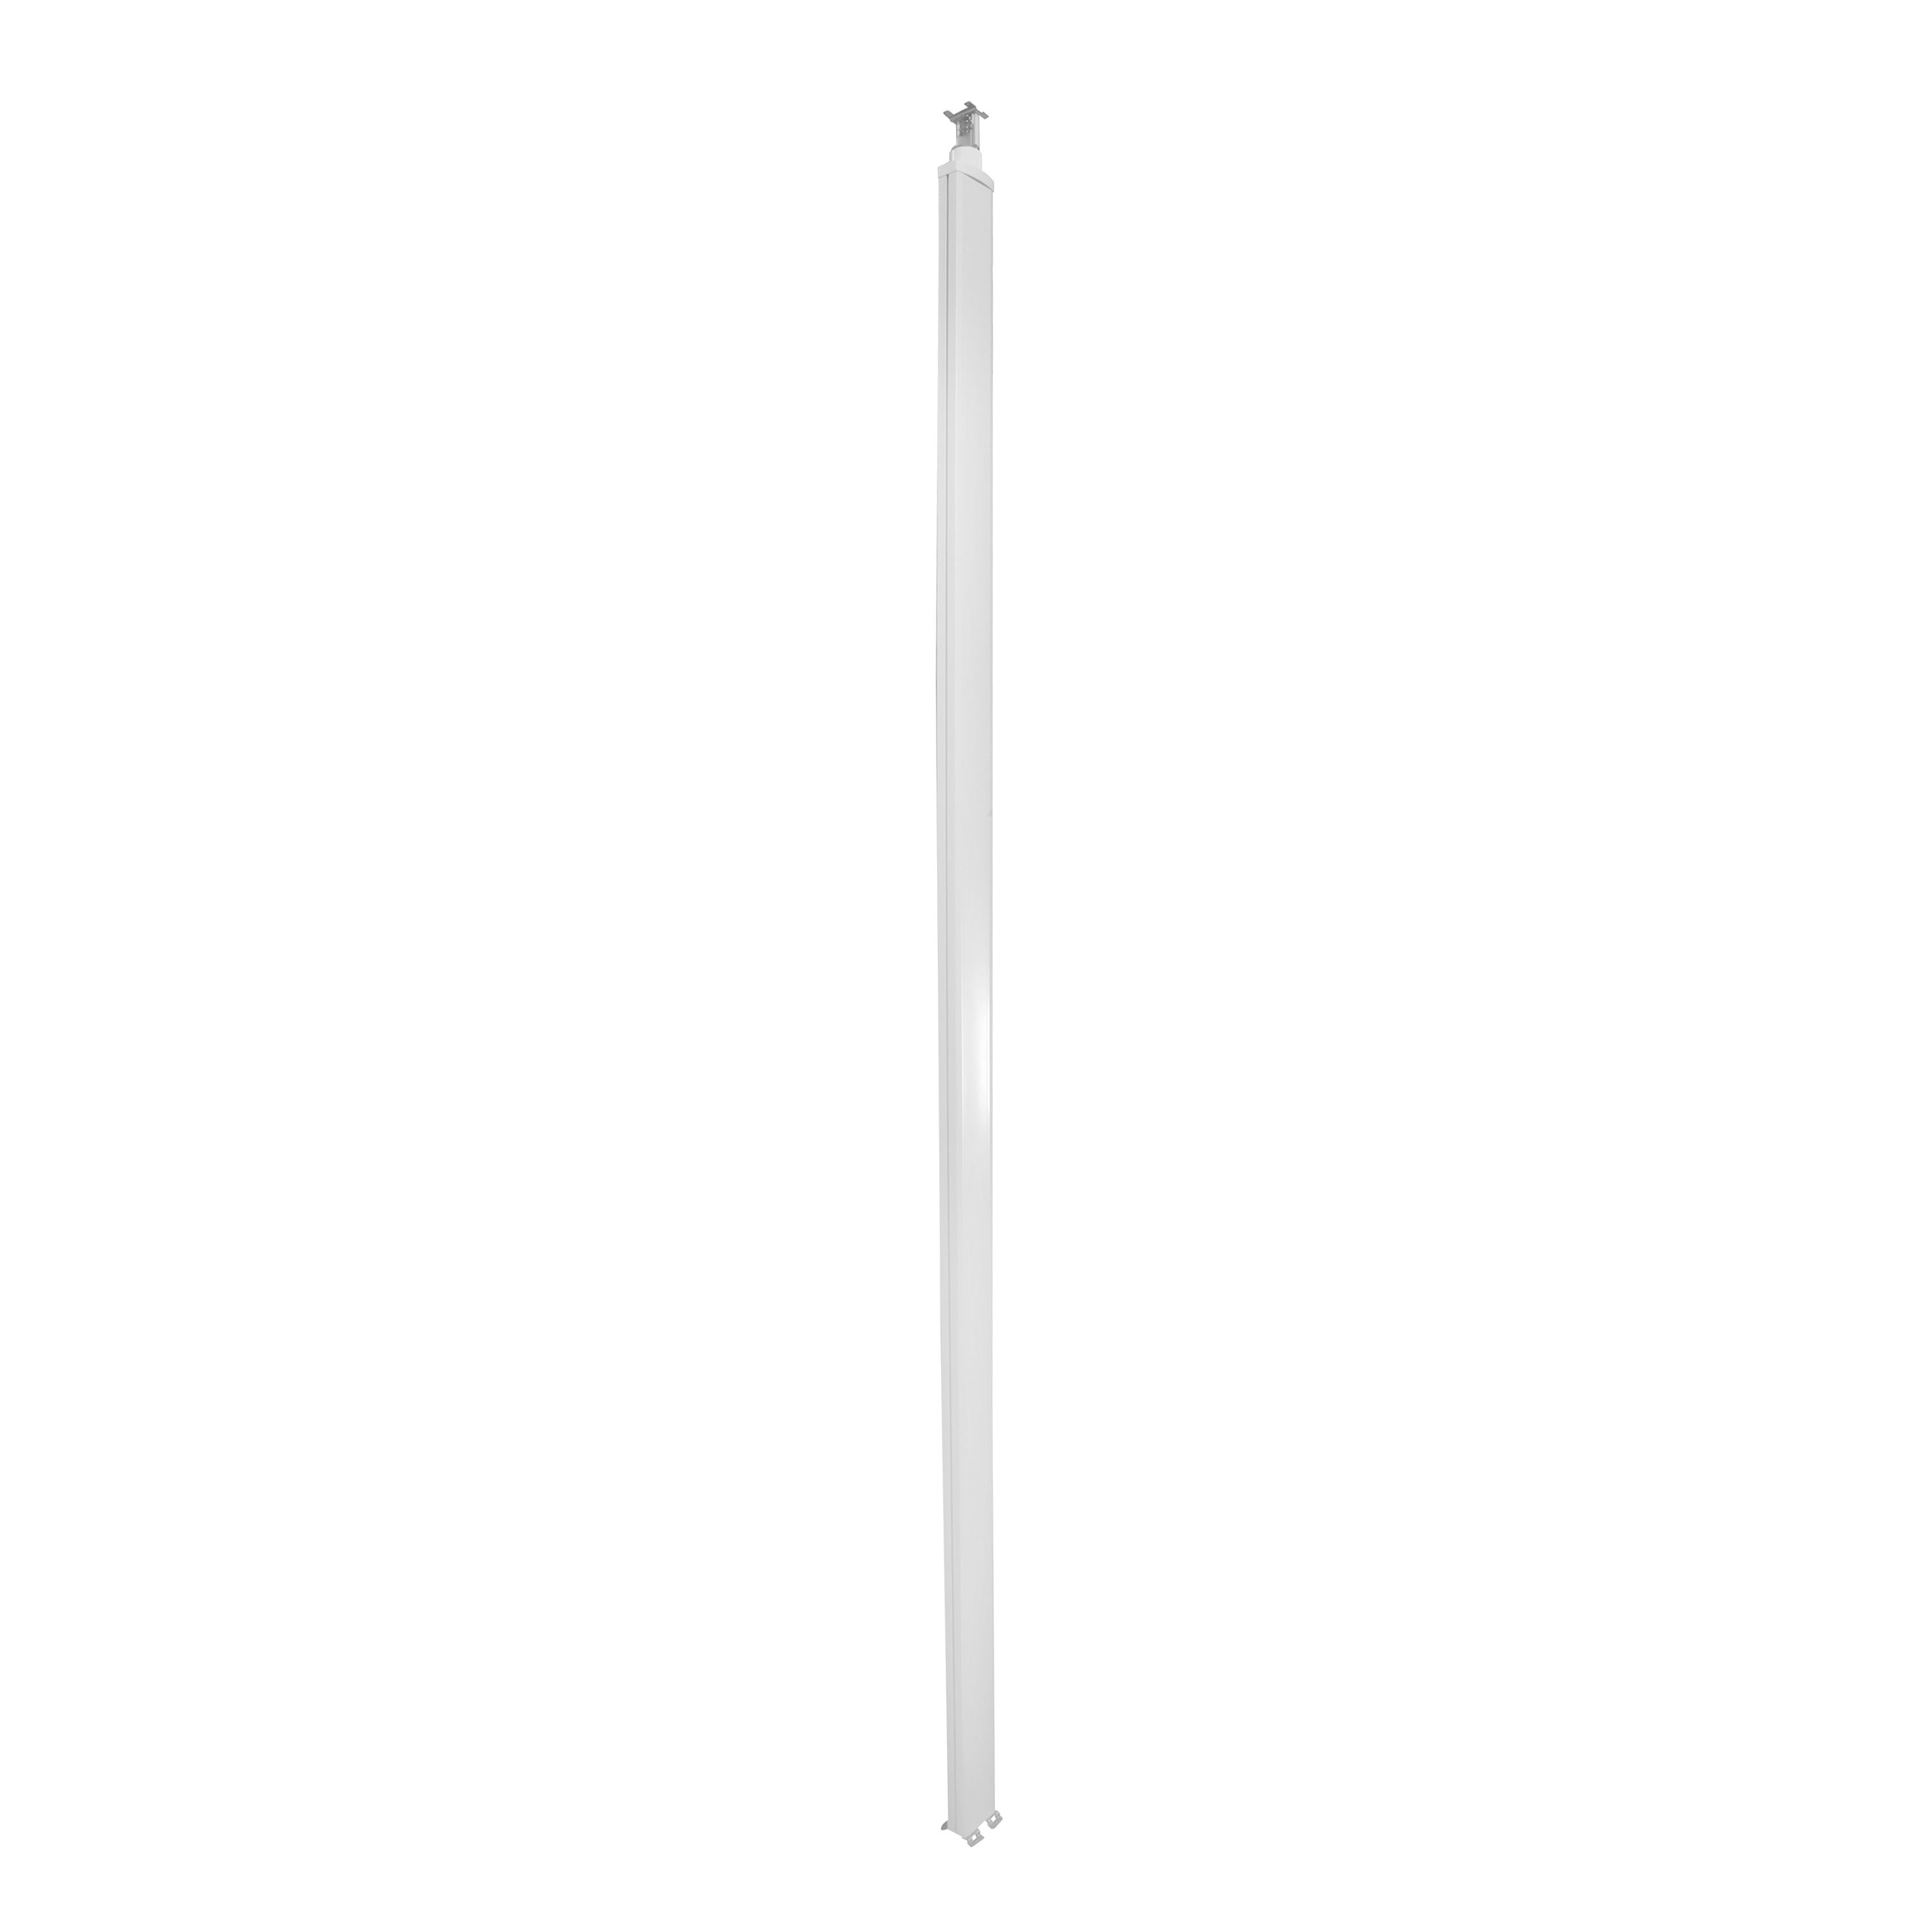 Универсальная колонна алюминиевая с крышкой из алюминия 1 секция, высота 4,02 метра, с возможностью увеличения высоты до 5,3 метра, цвет белый 653113 Legrand